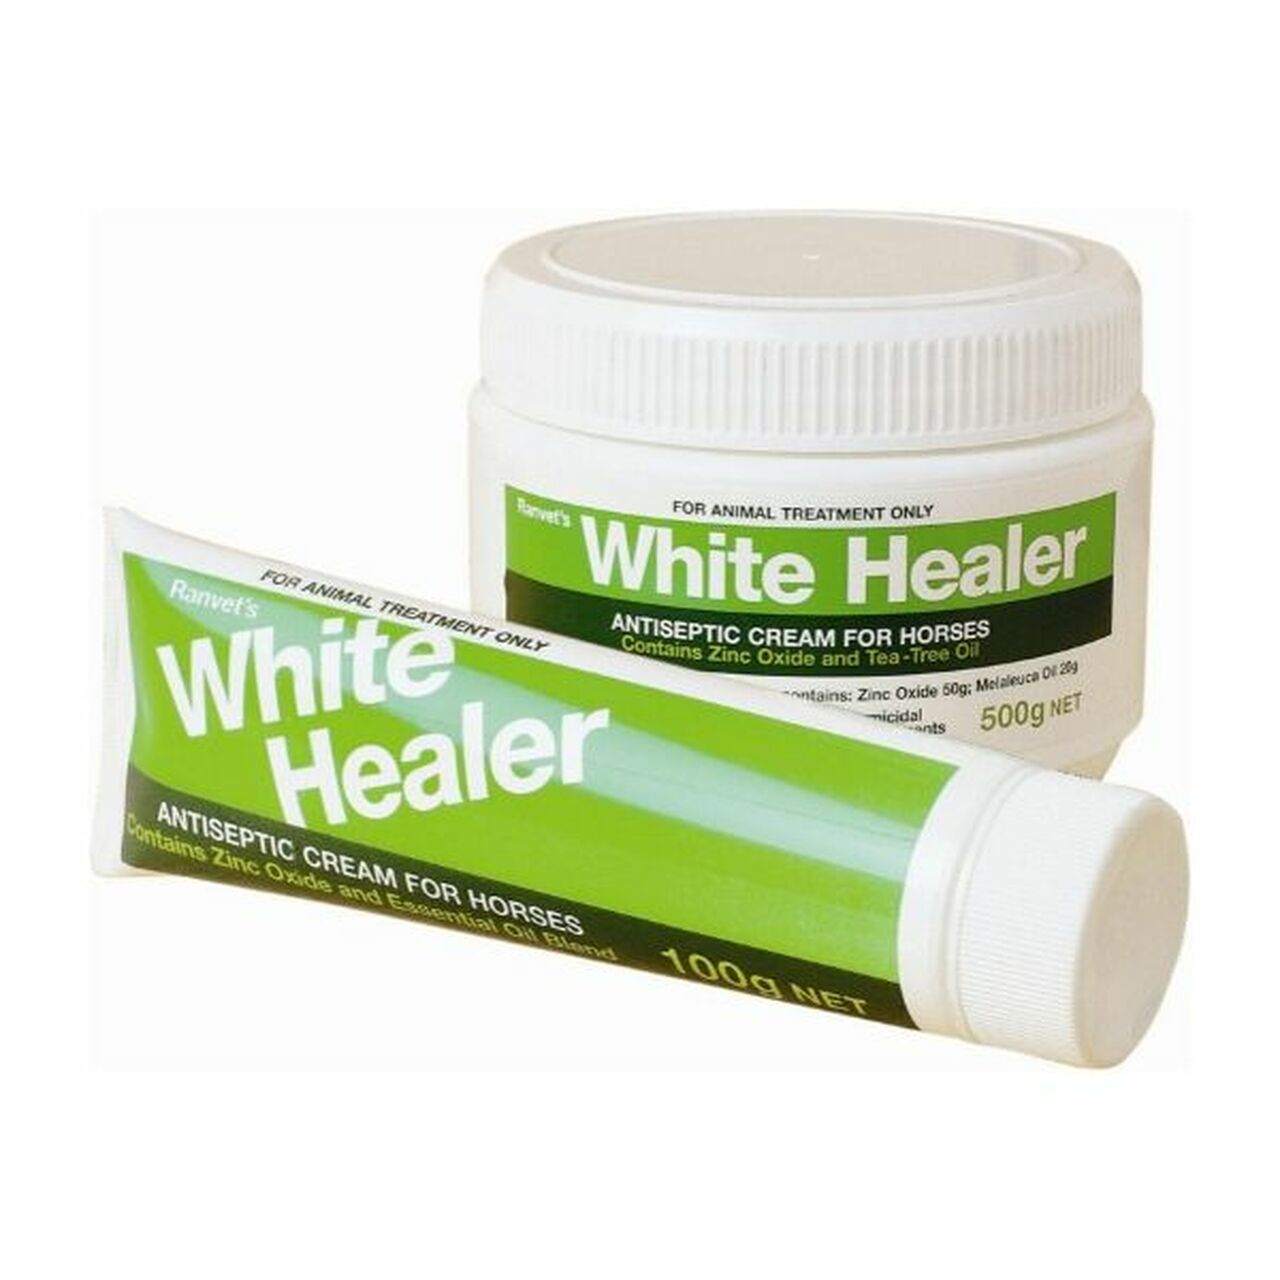 White healer cream for horses